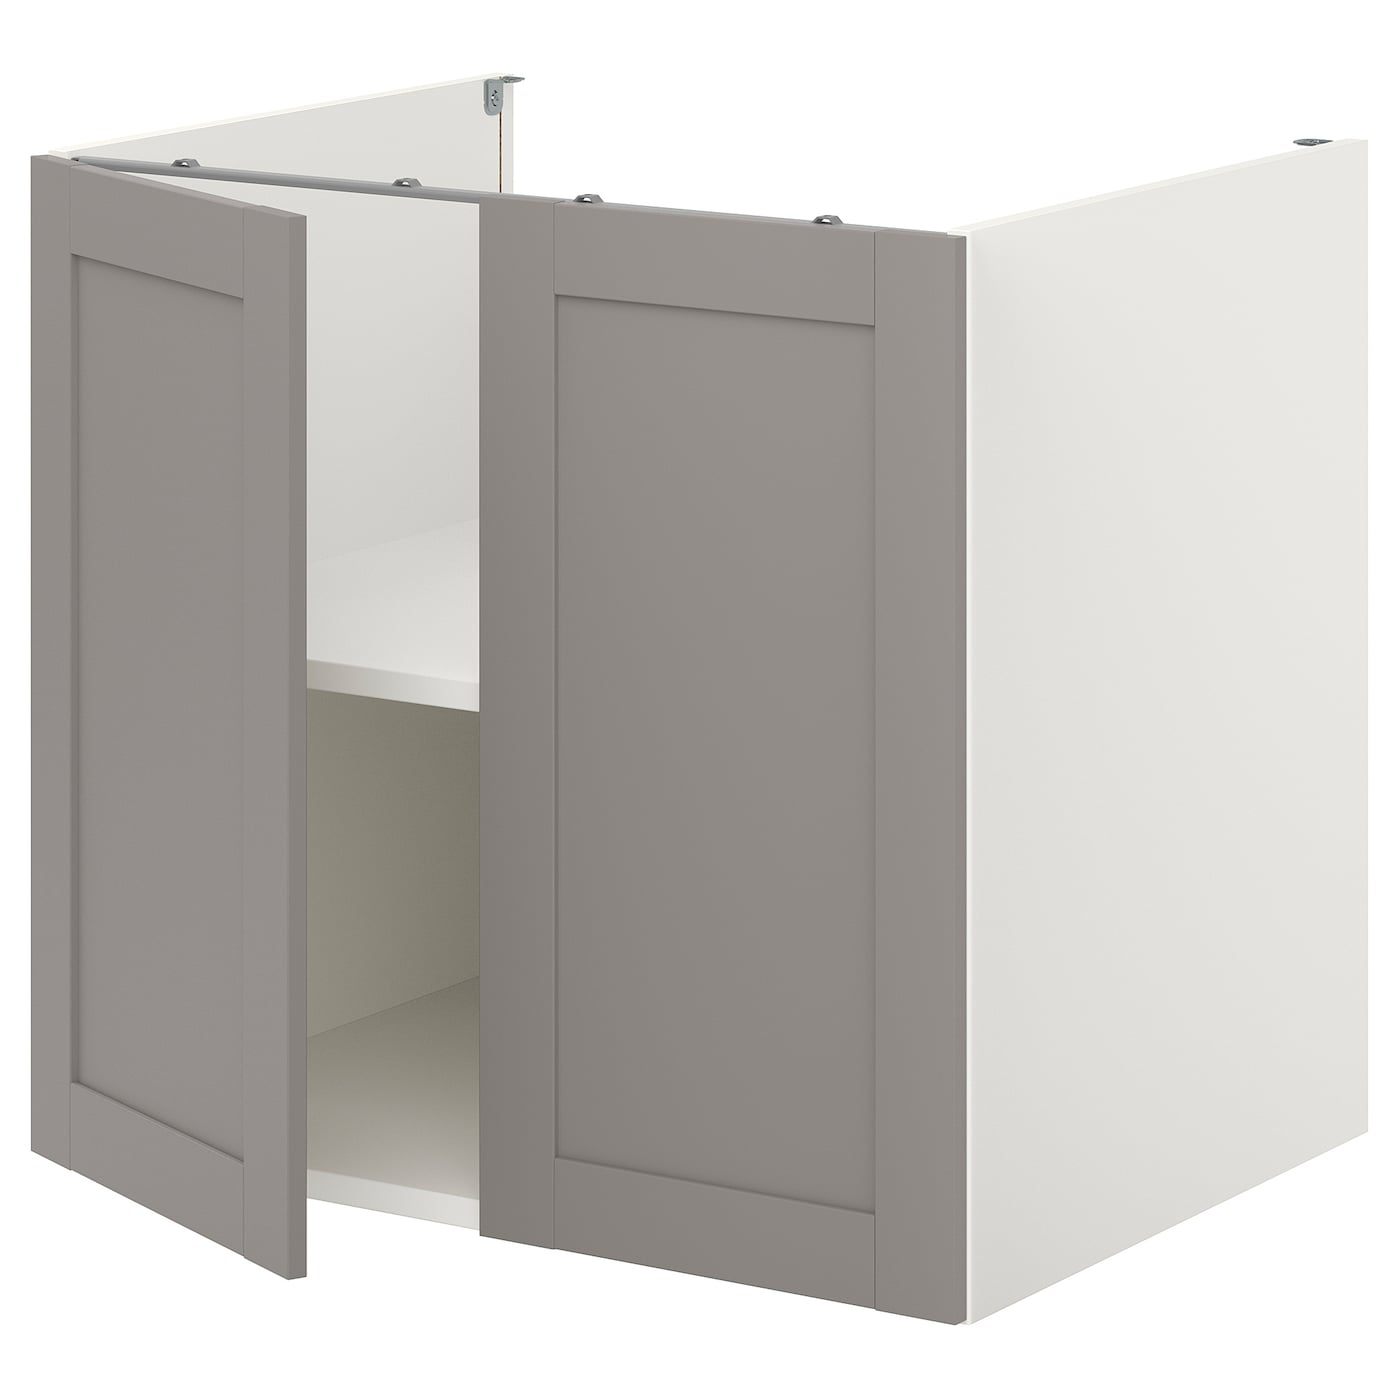 Напольный шкаф с дверцами - IKEA ENHET, 75x62x80см, белый/серый, ЭХНЕТ ИКЕА